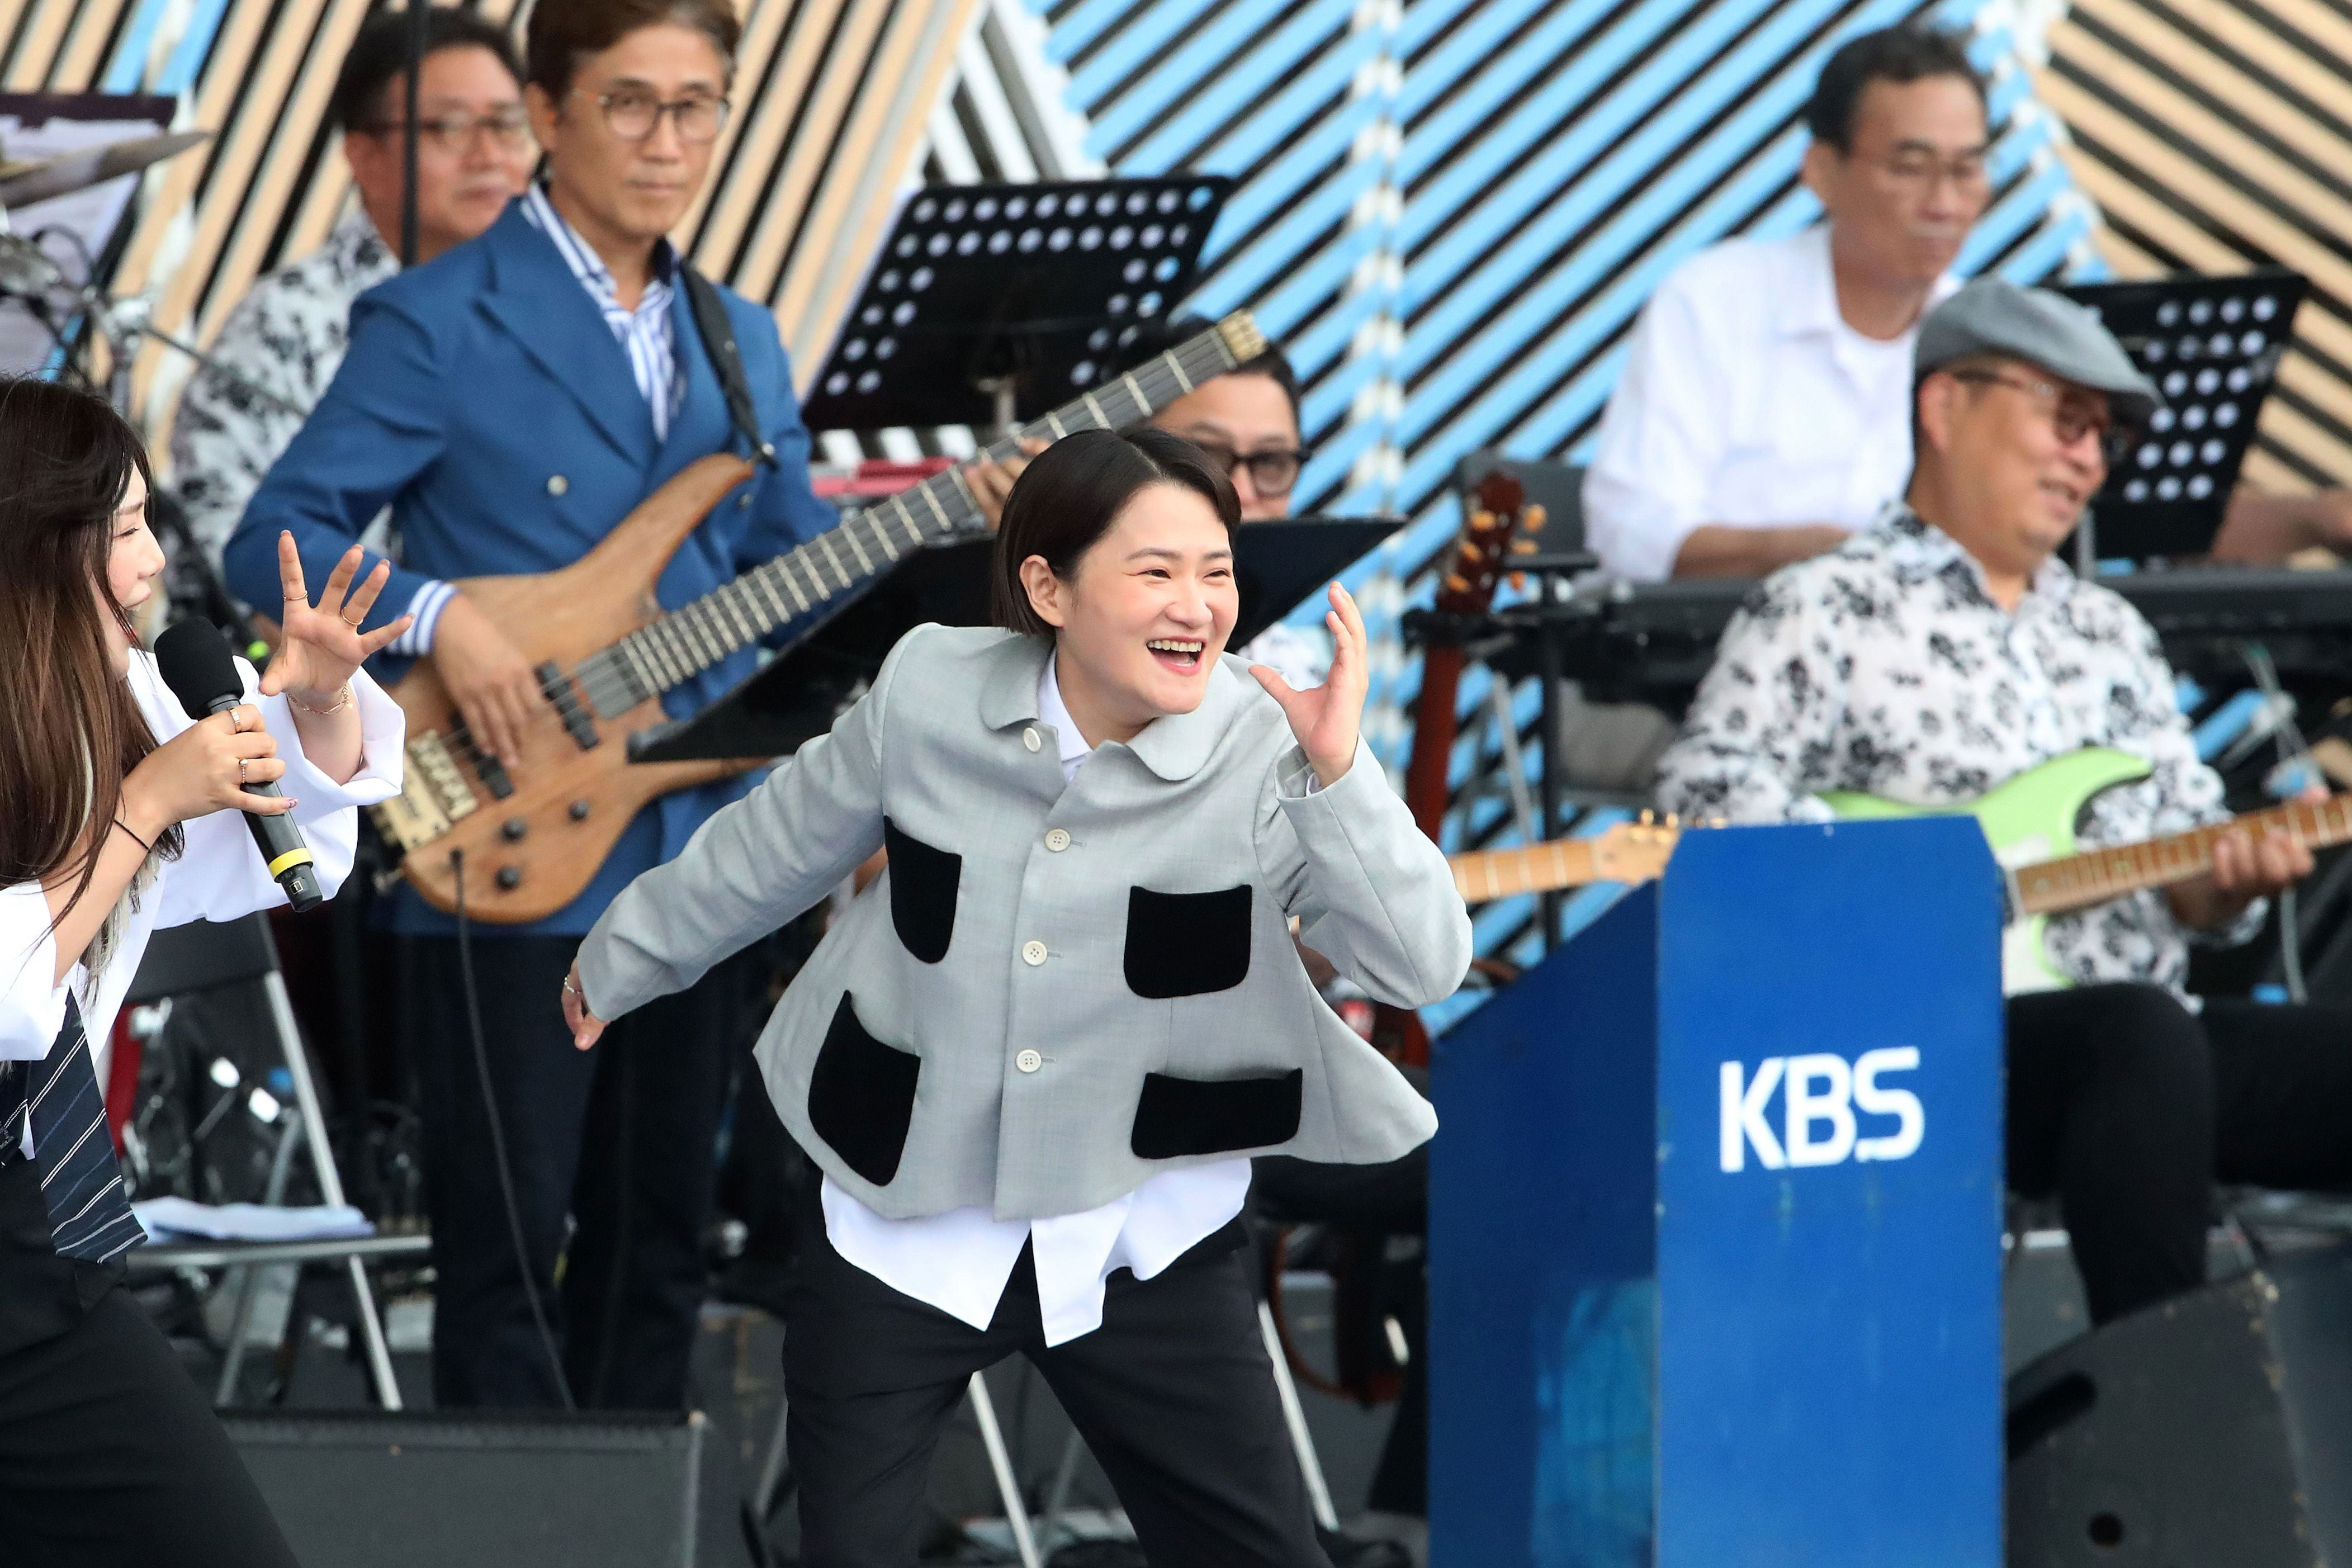 ‘시청률 낮다고 김신영 뺐는데…’ 전국노래자랑 시청률 제자리걸음